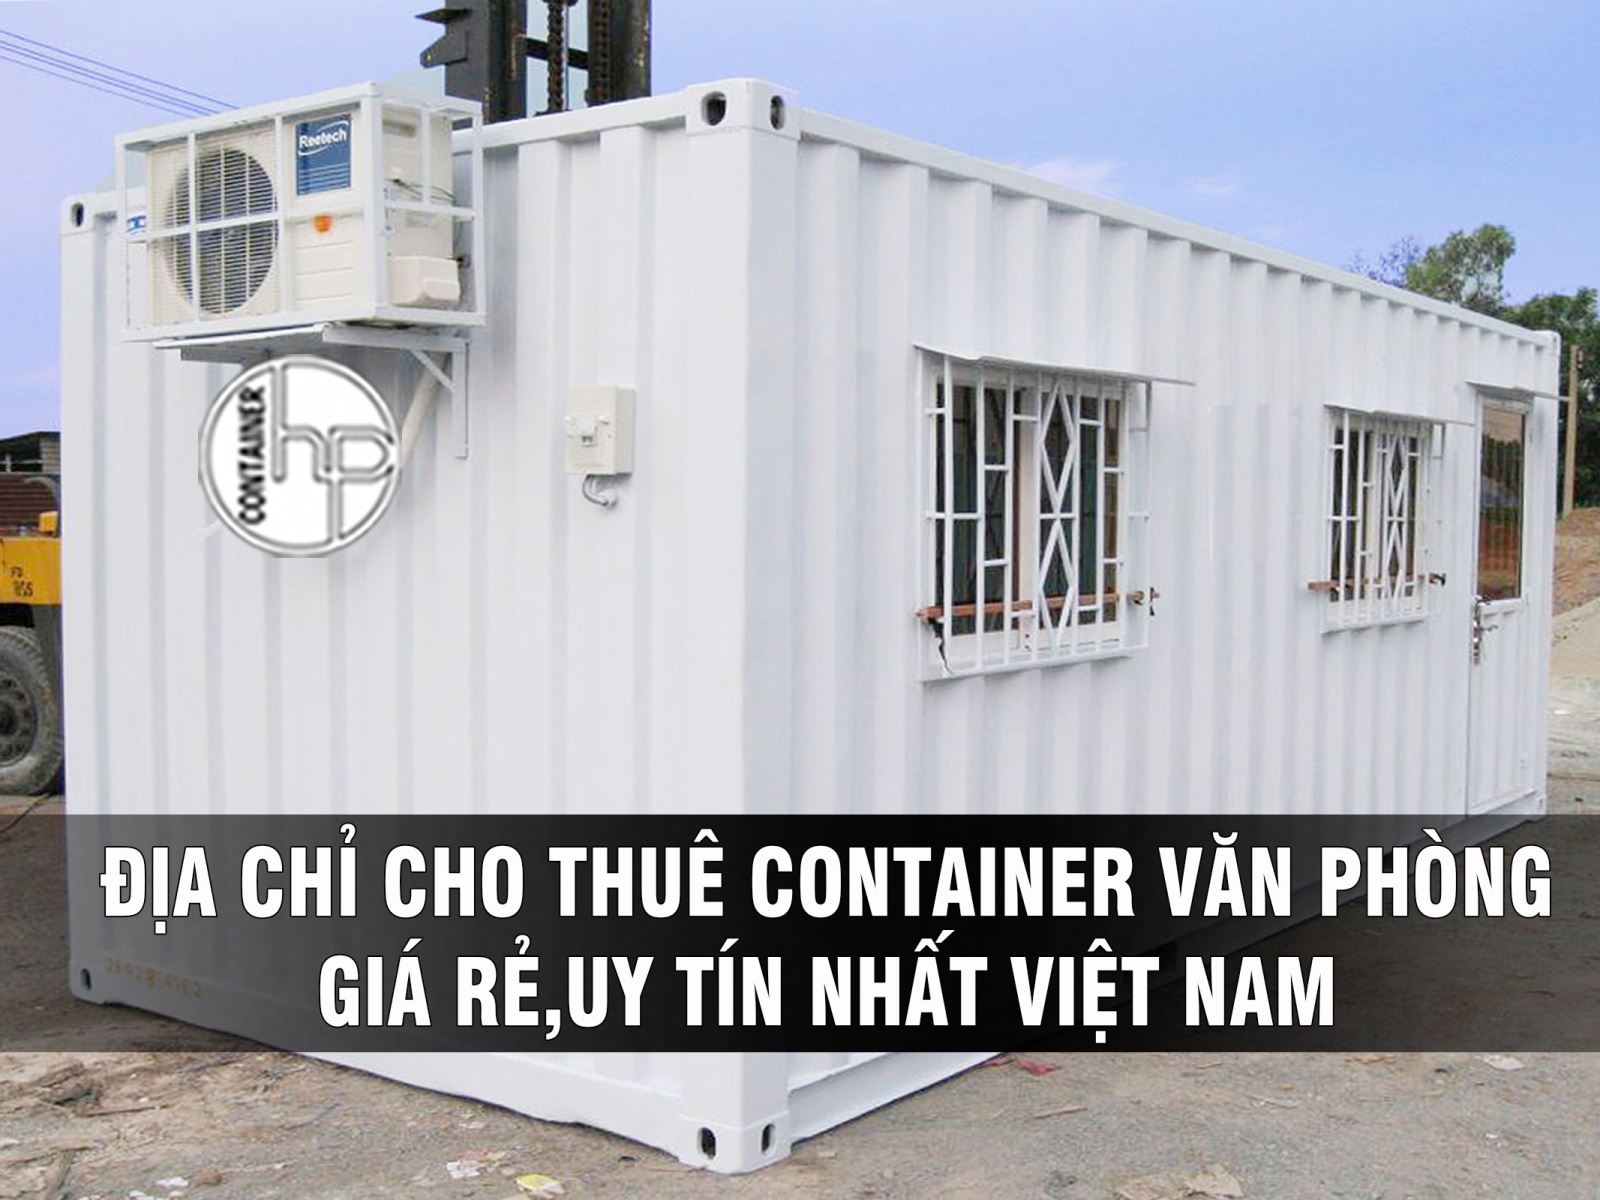 Tổng giá thuê container tại Hà Nam được tính như thế nào?